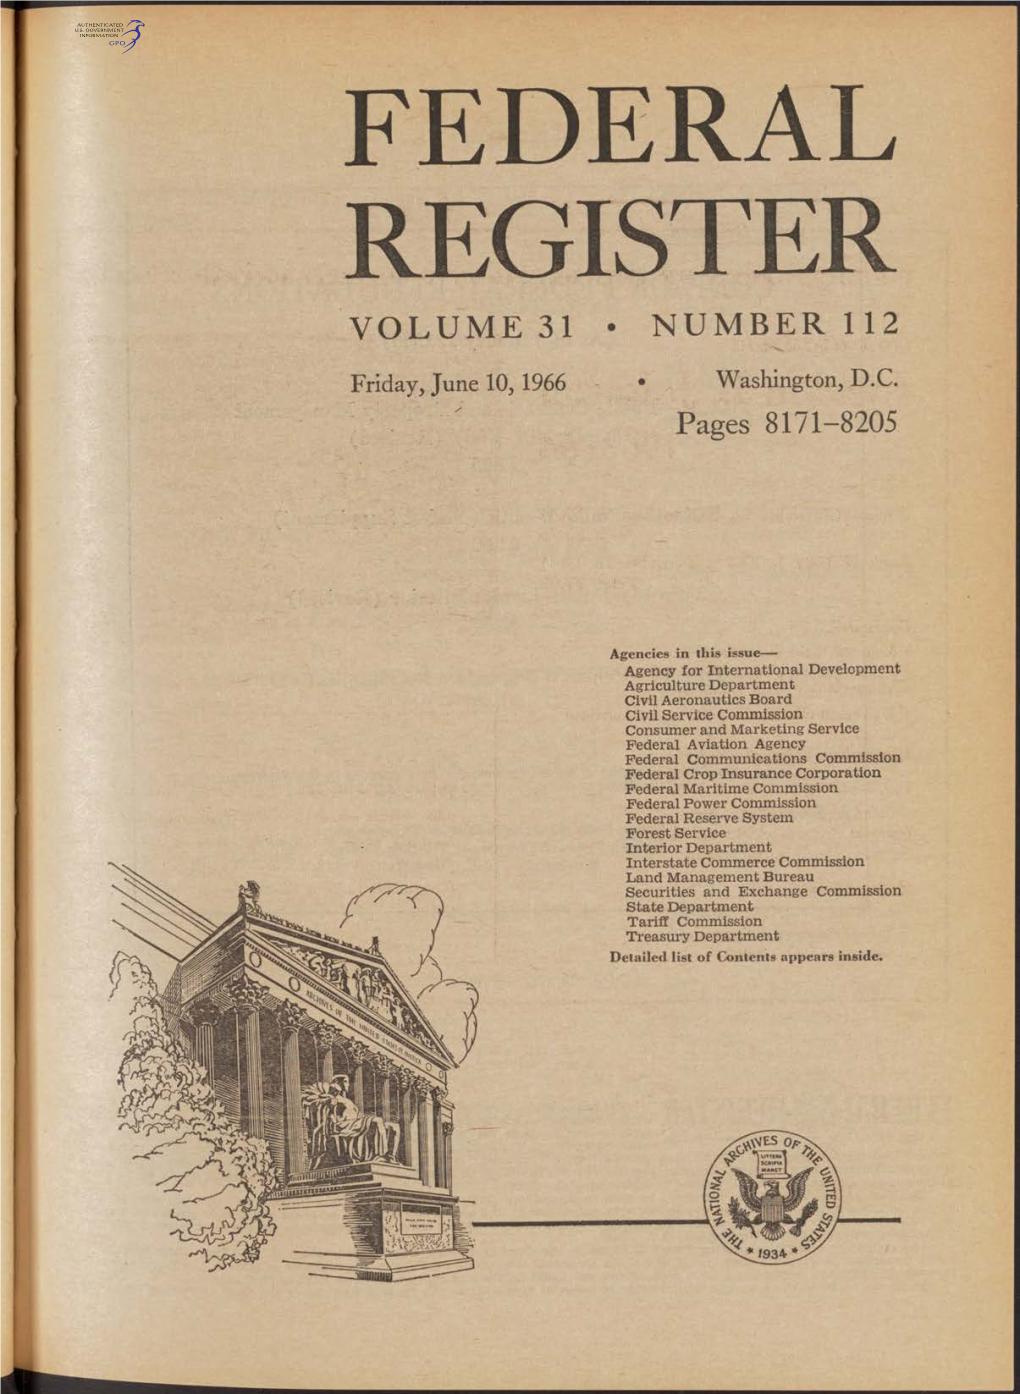 Federal Register Volume 31 • Number 112